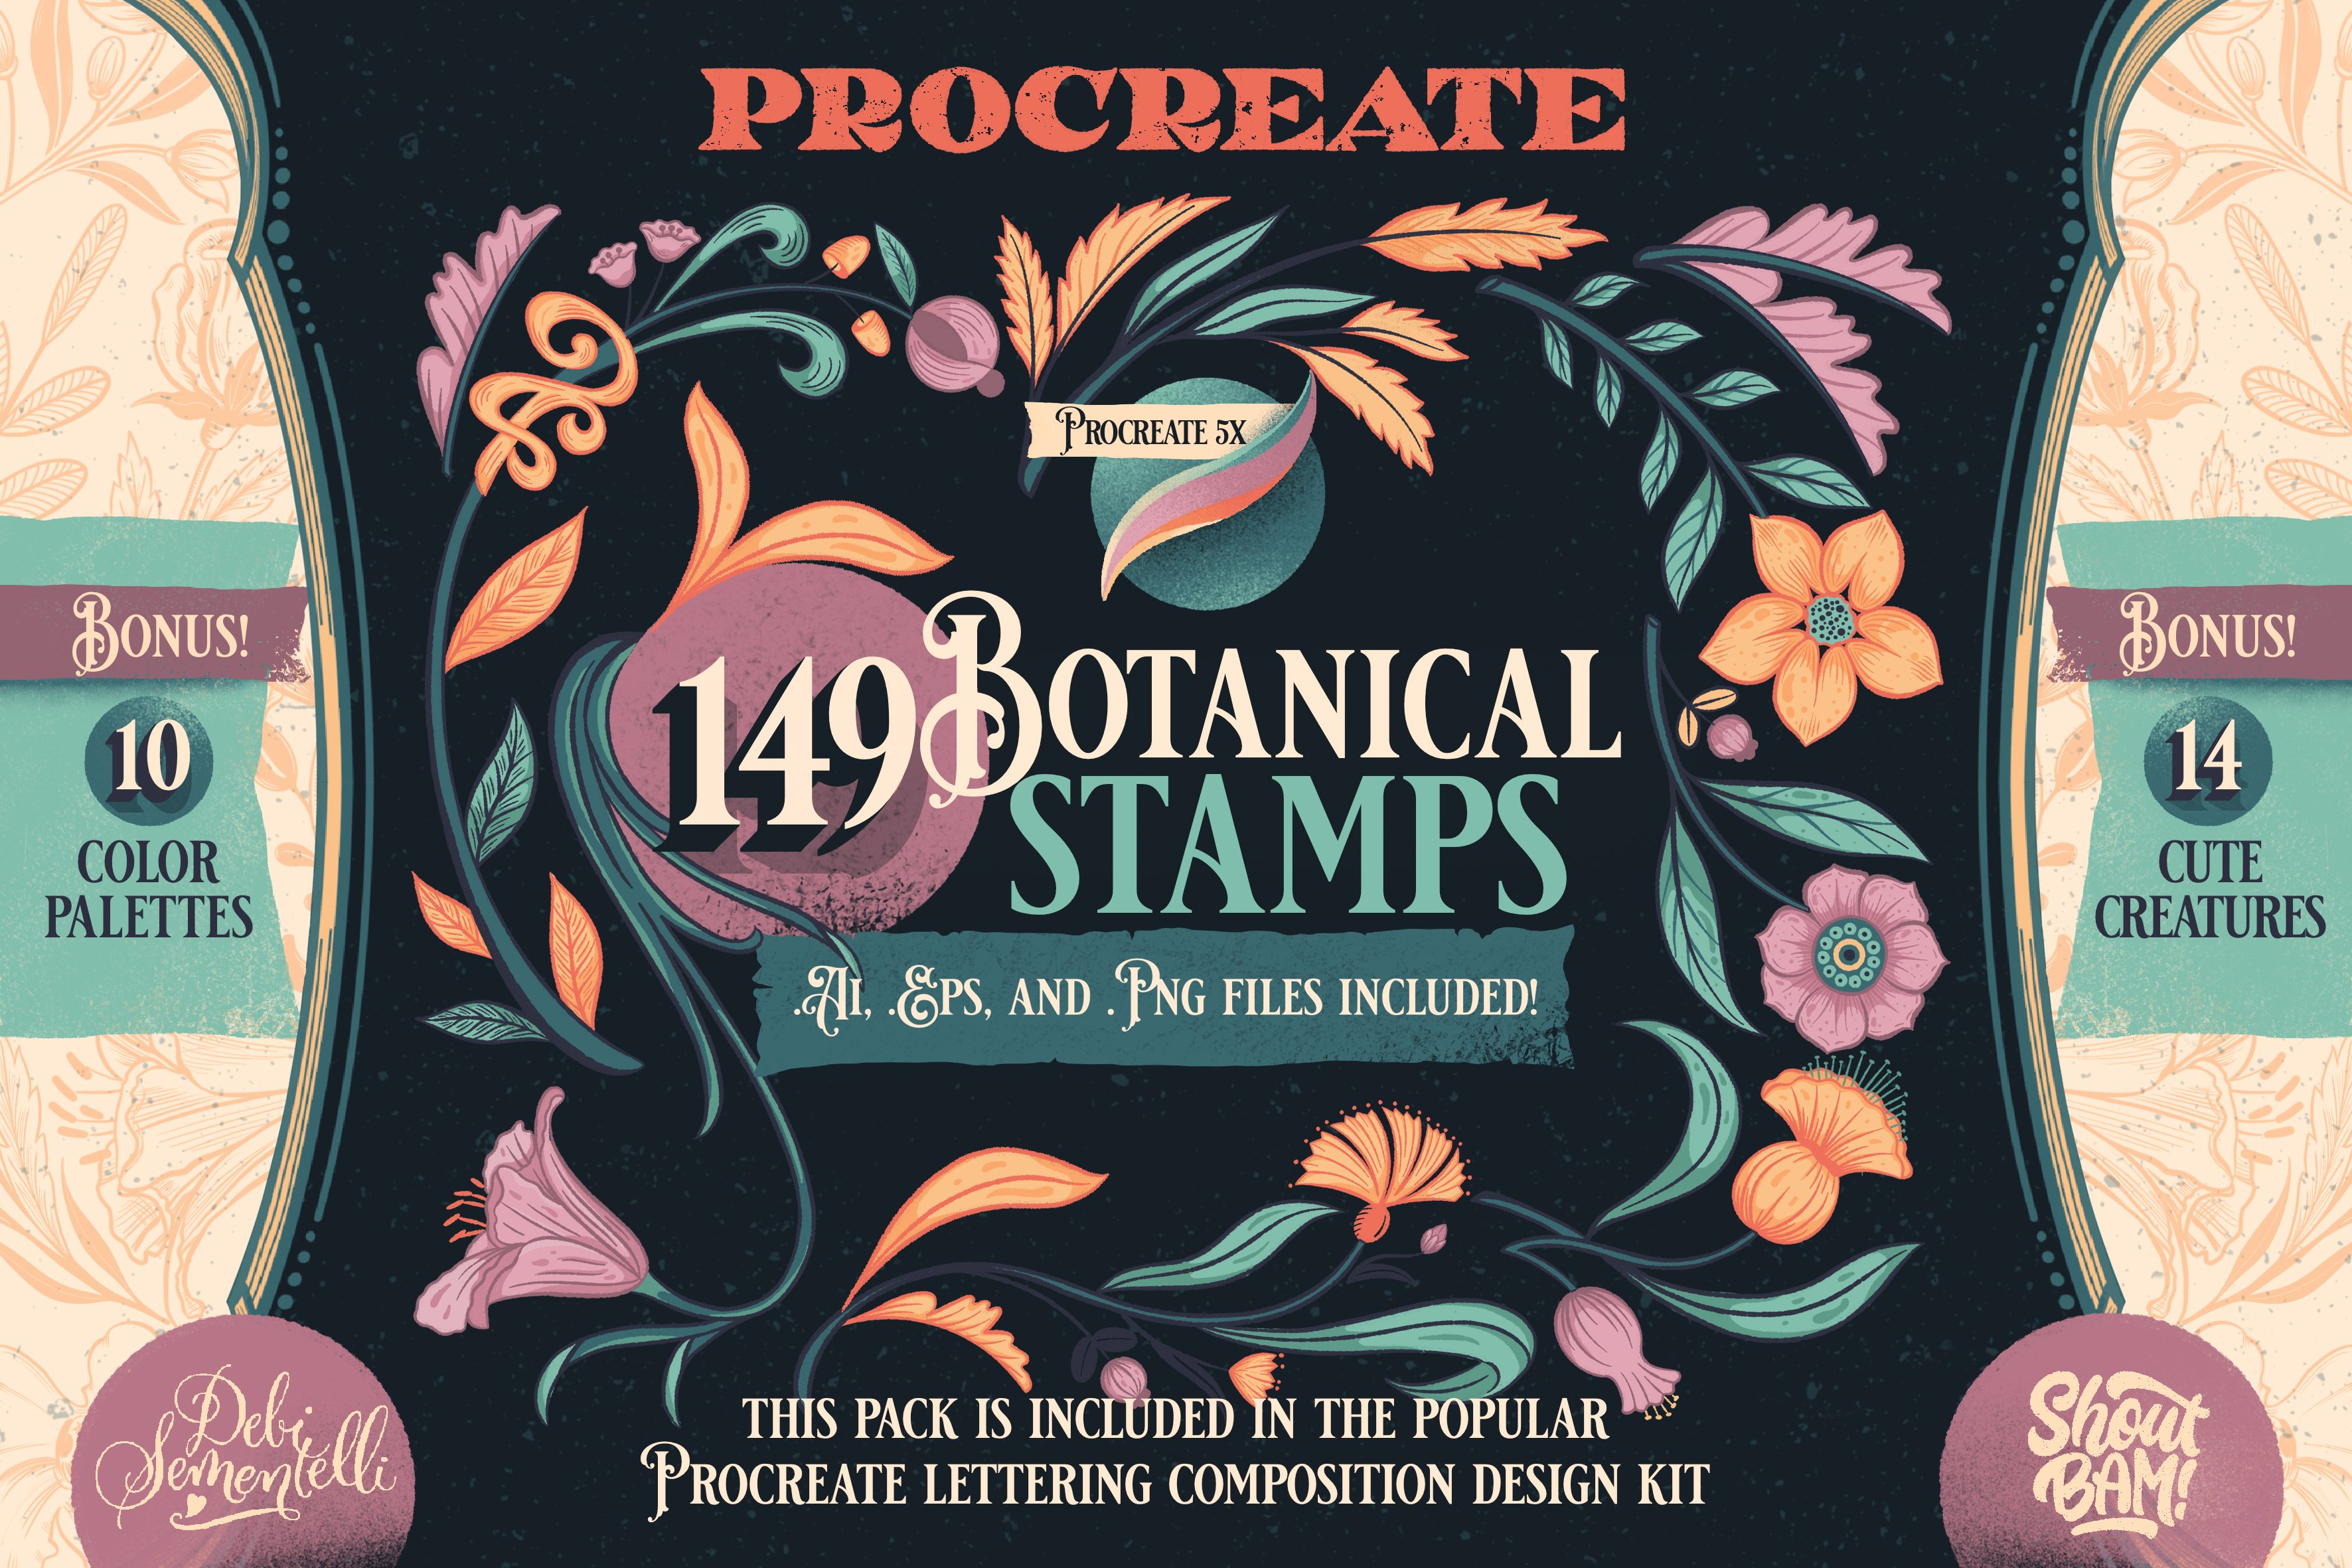 Procreate Botanical Brush Stampscover image.